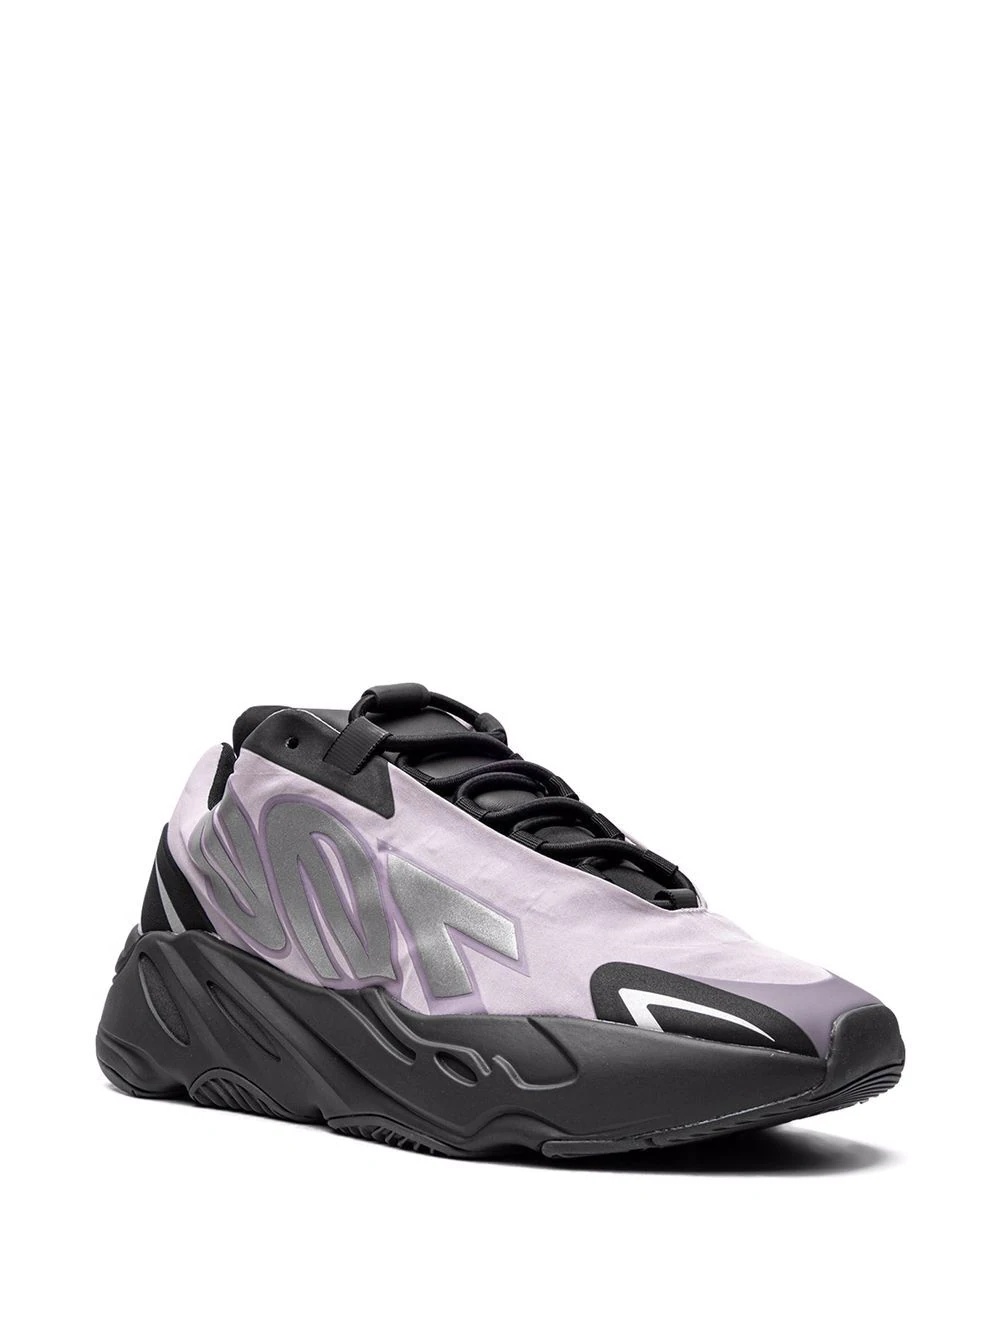 YEEZY 700 MNVN "Geode" sneakers - 2